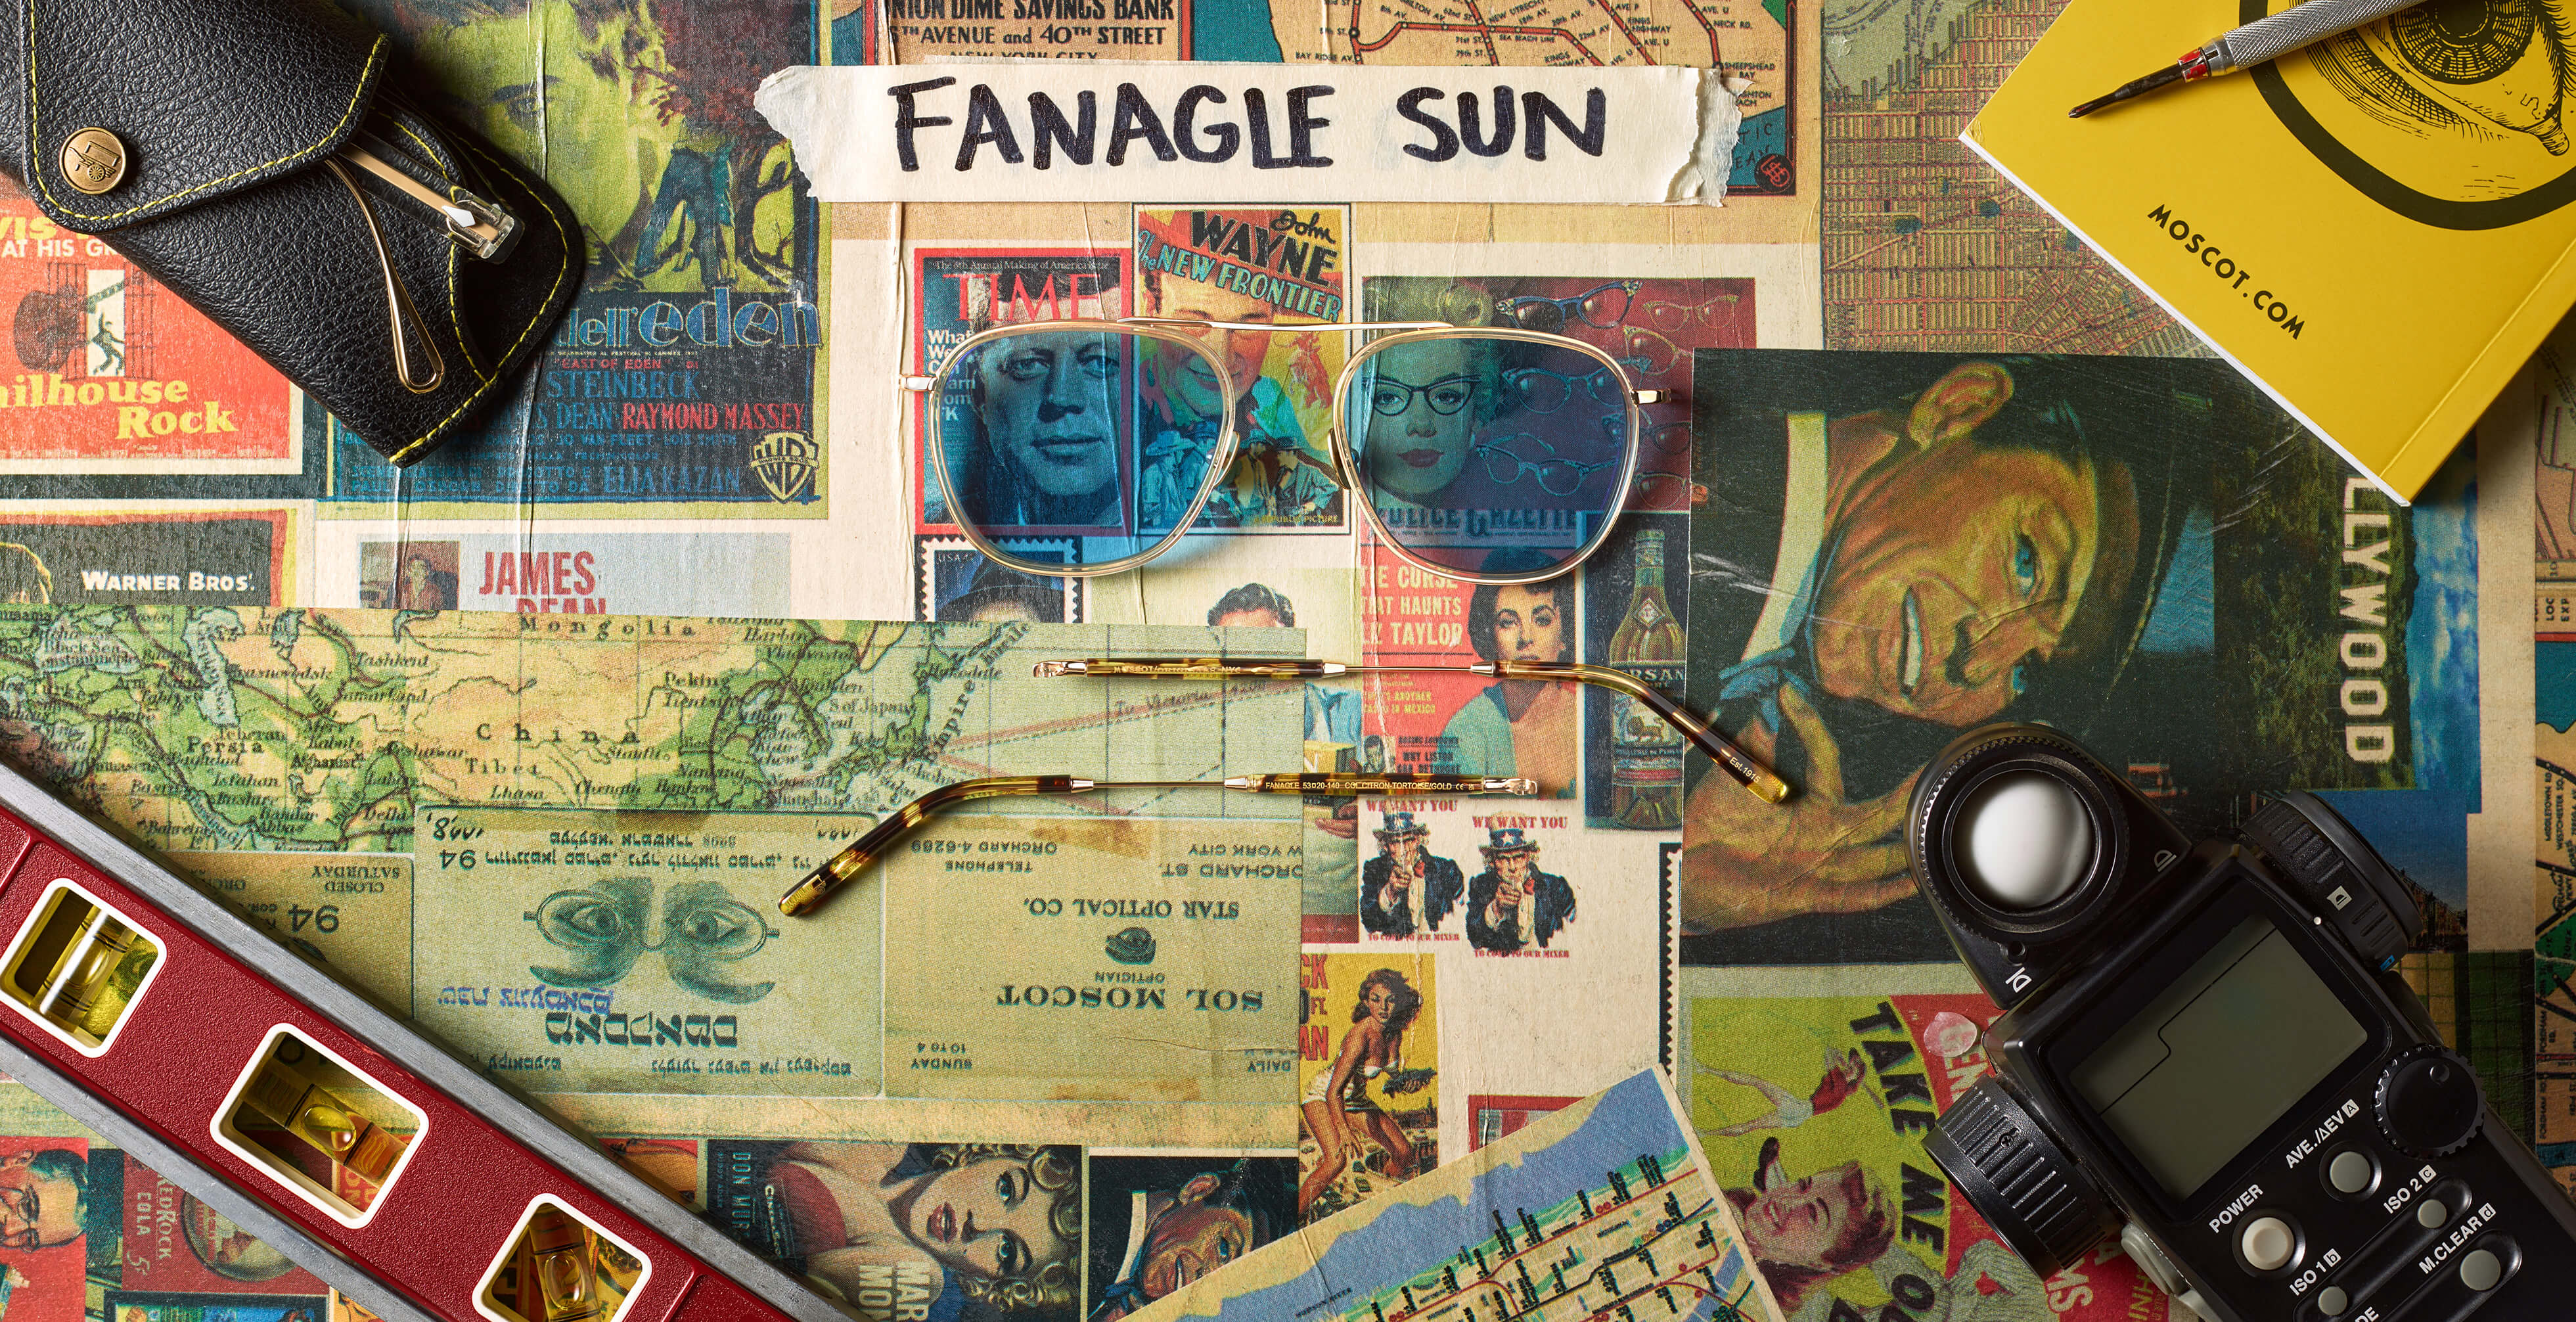 The FANAGLE SUN